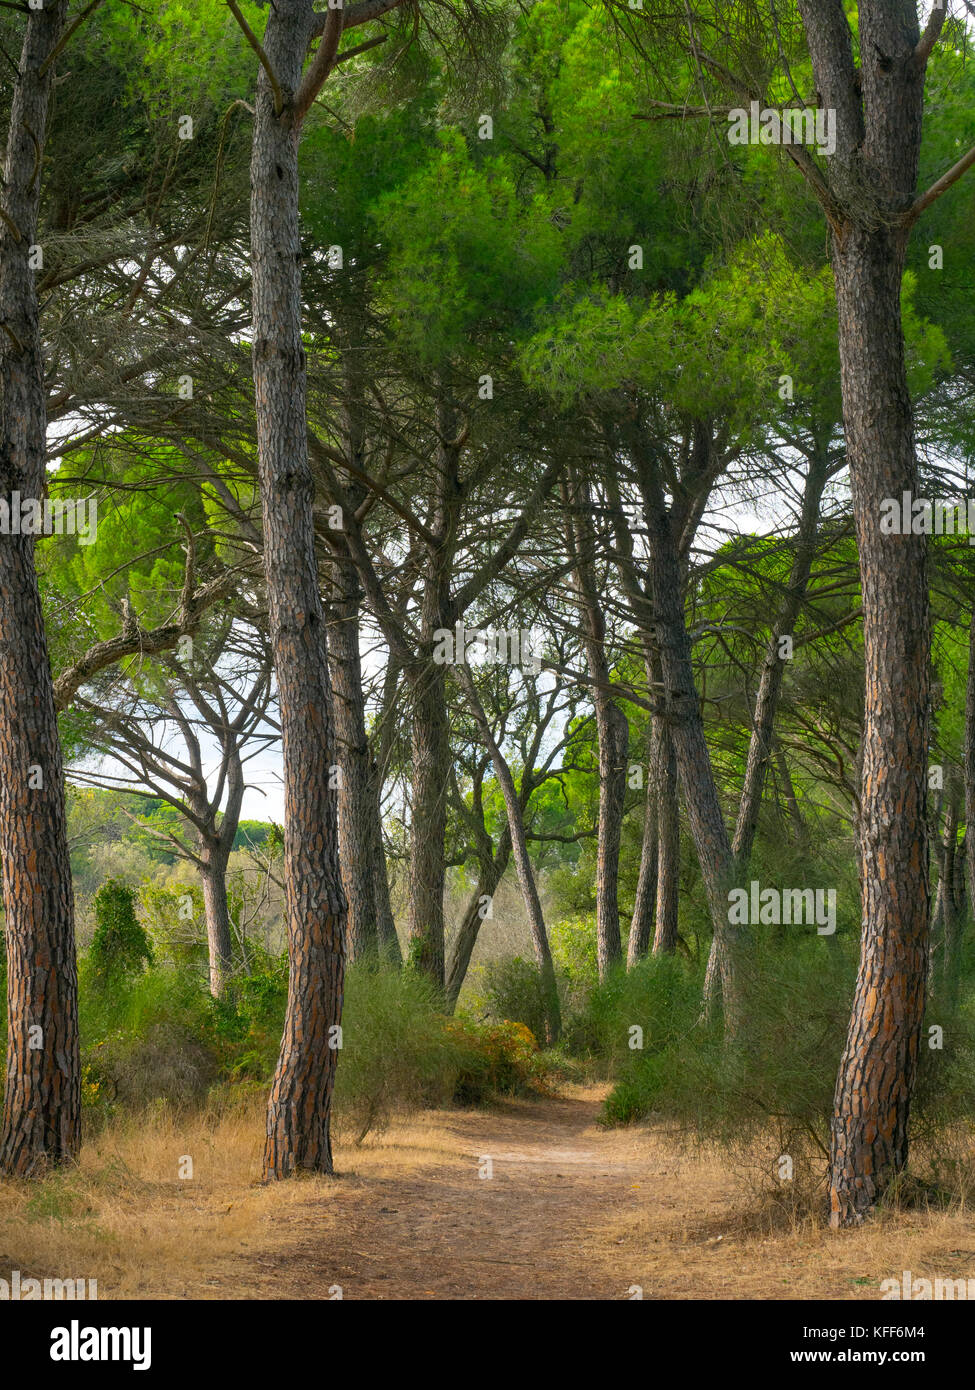 Stone pine Pinus pinea, also known as the Italian stone pine, umbrella pine and parasol pine Parque Nacional de Doñana, Almonte, Spain Stock Photo